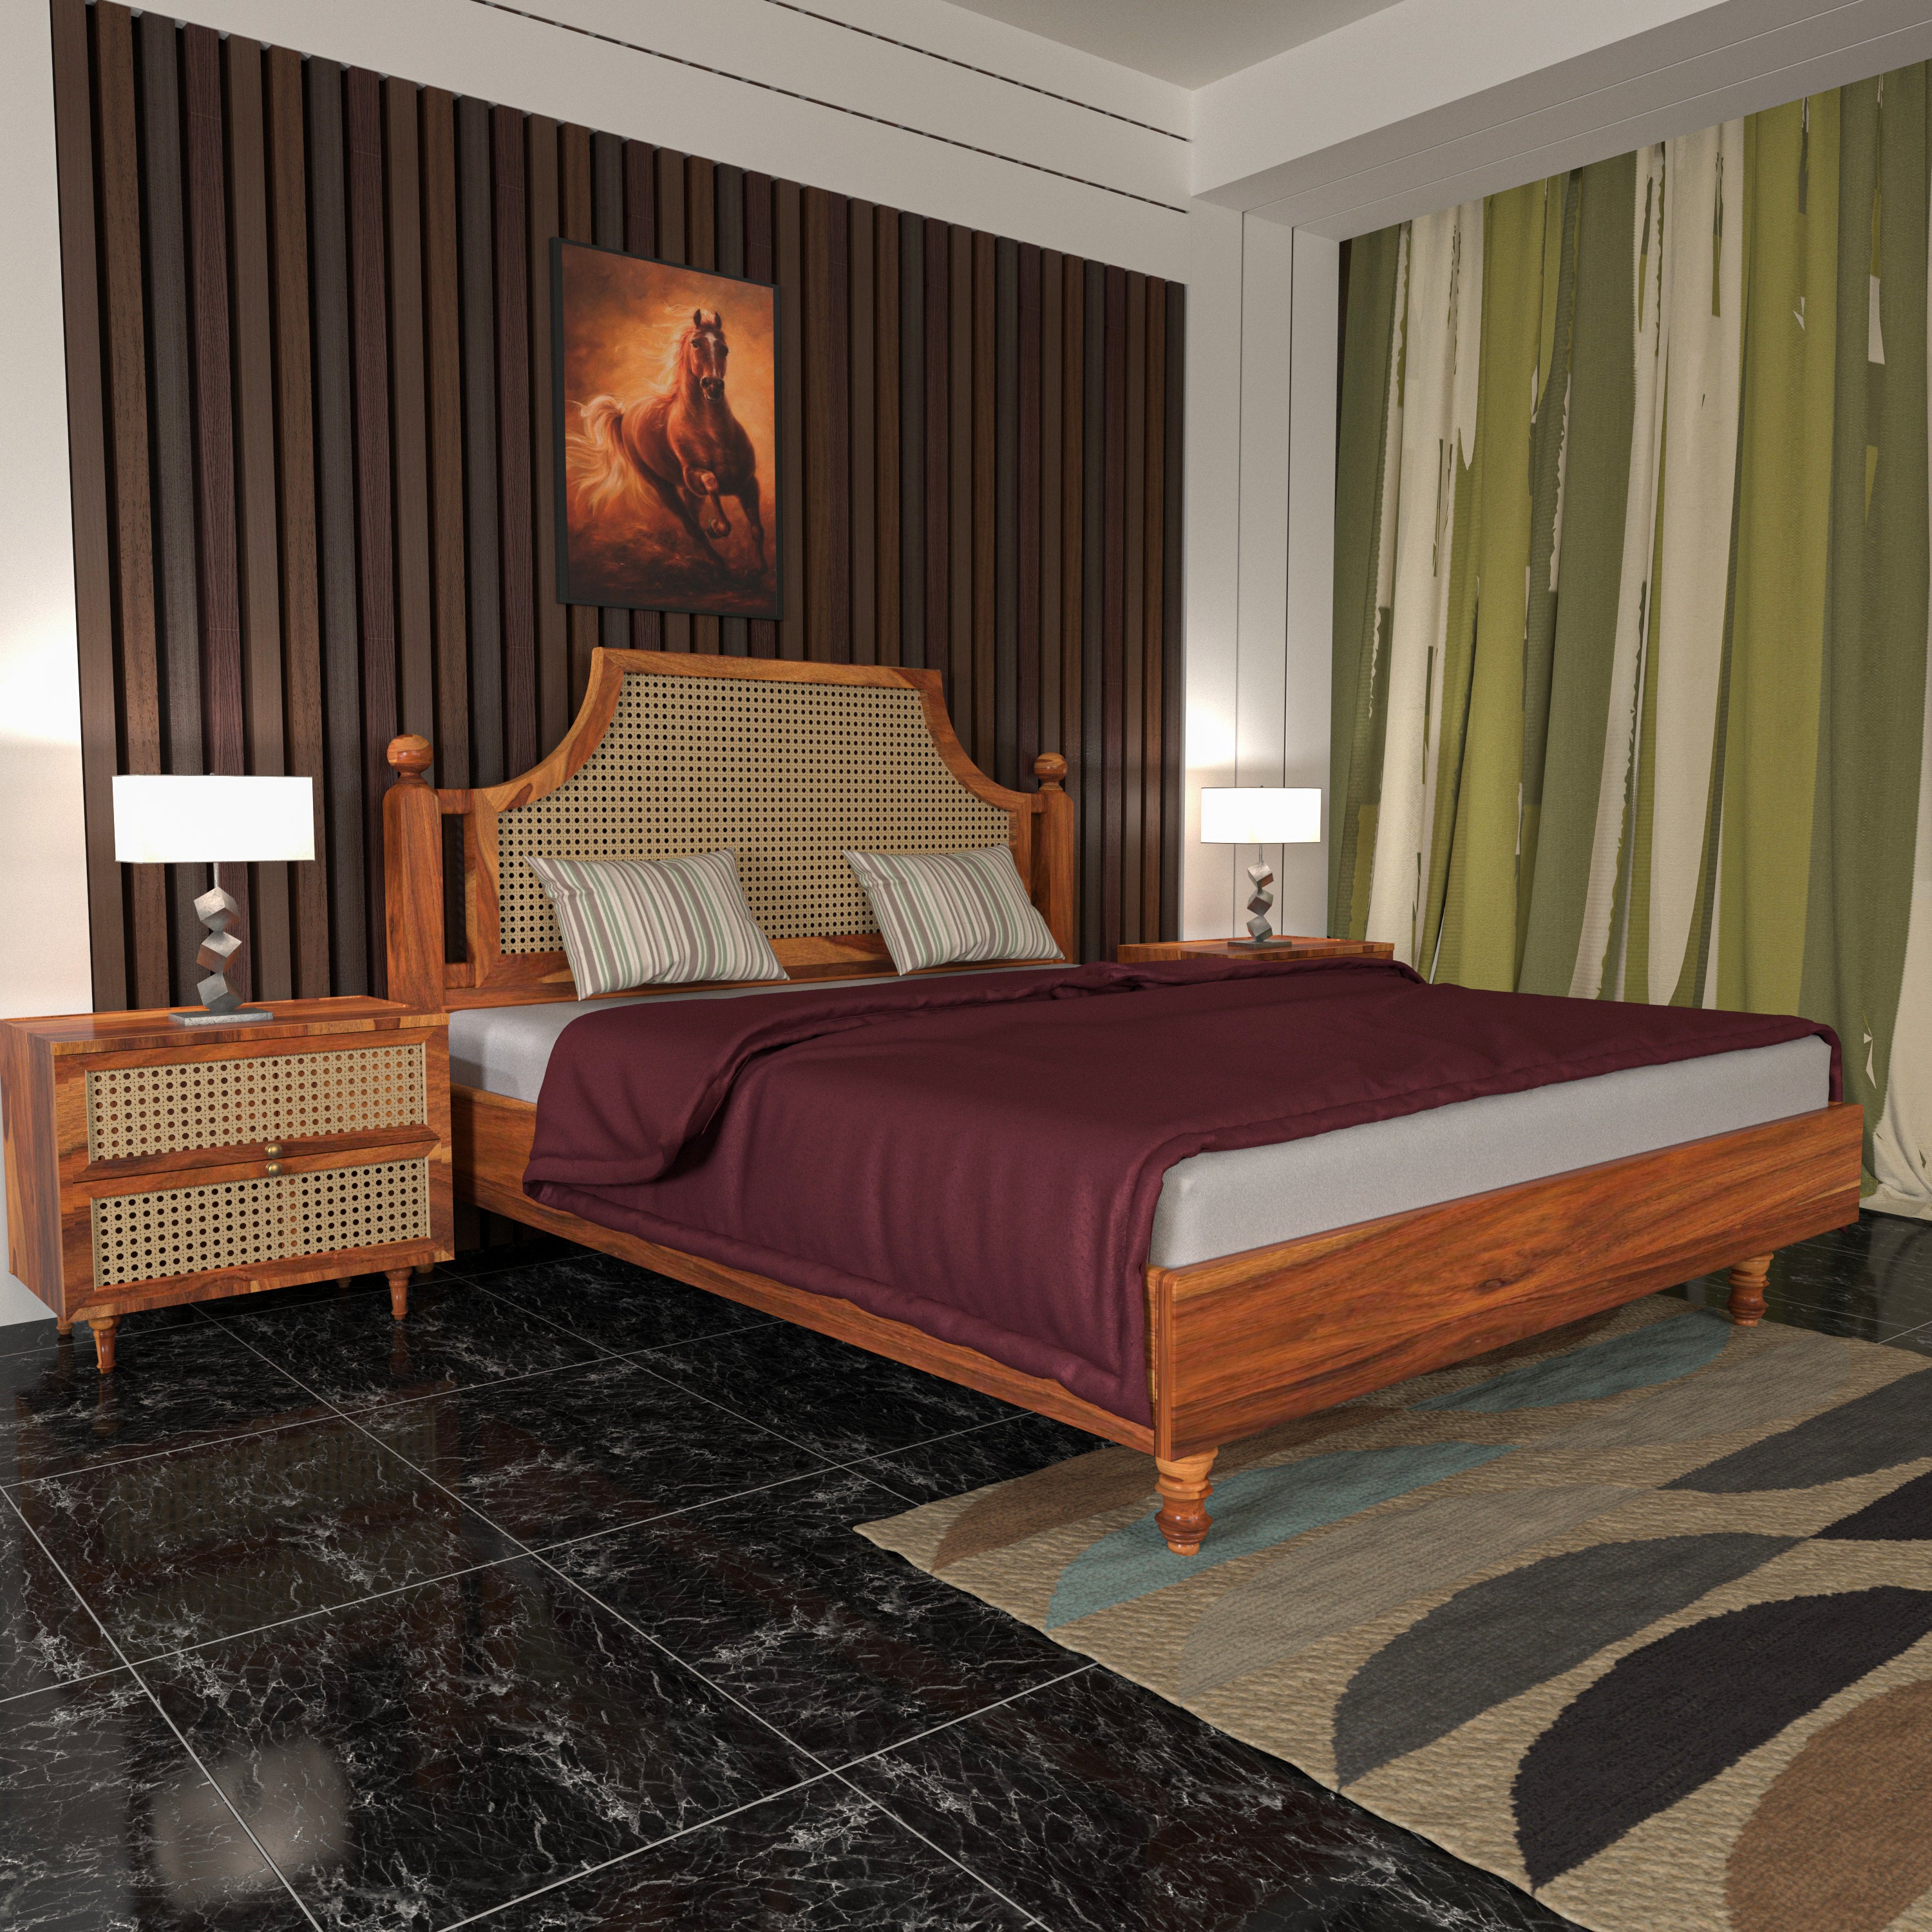 Vintage Bourbon Style Wooden Handmade Bed with Cane Storage Bedside Bedroom Furniture Sets